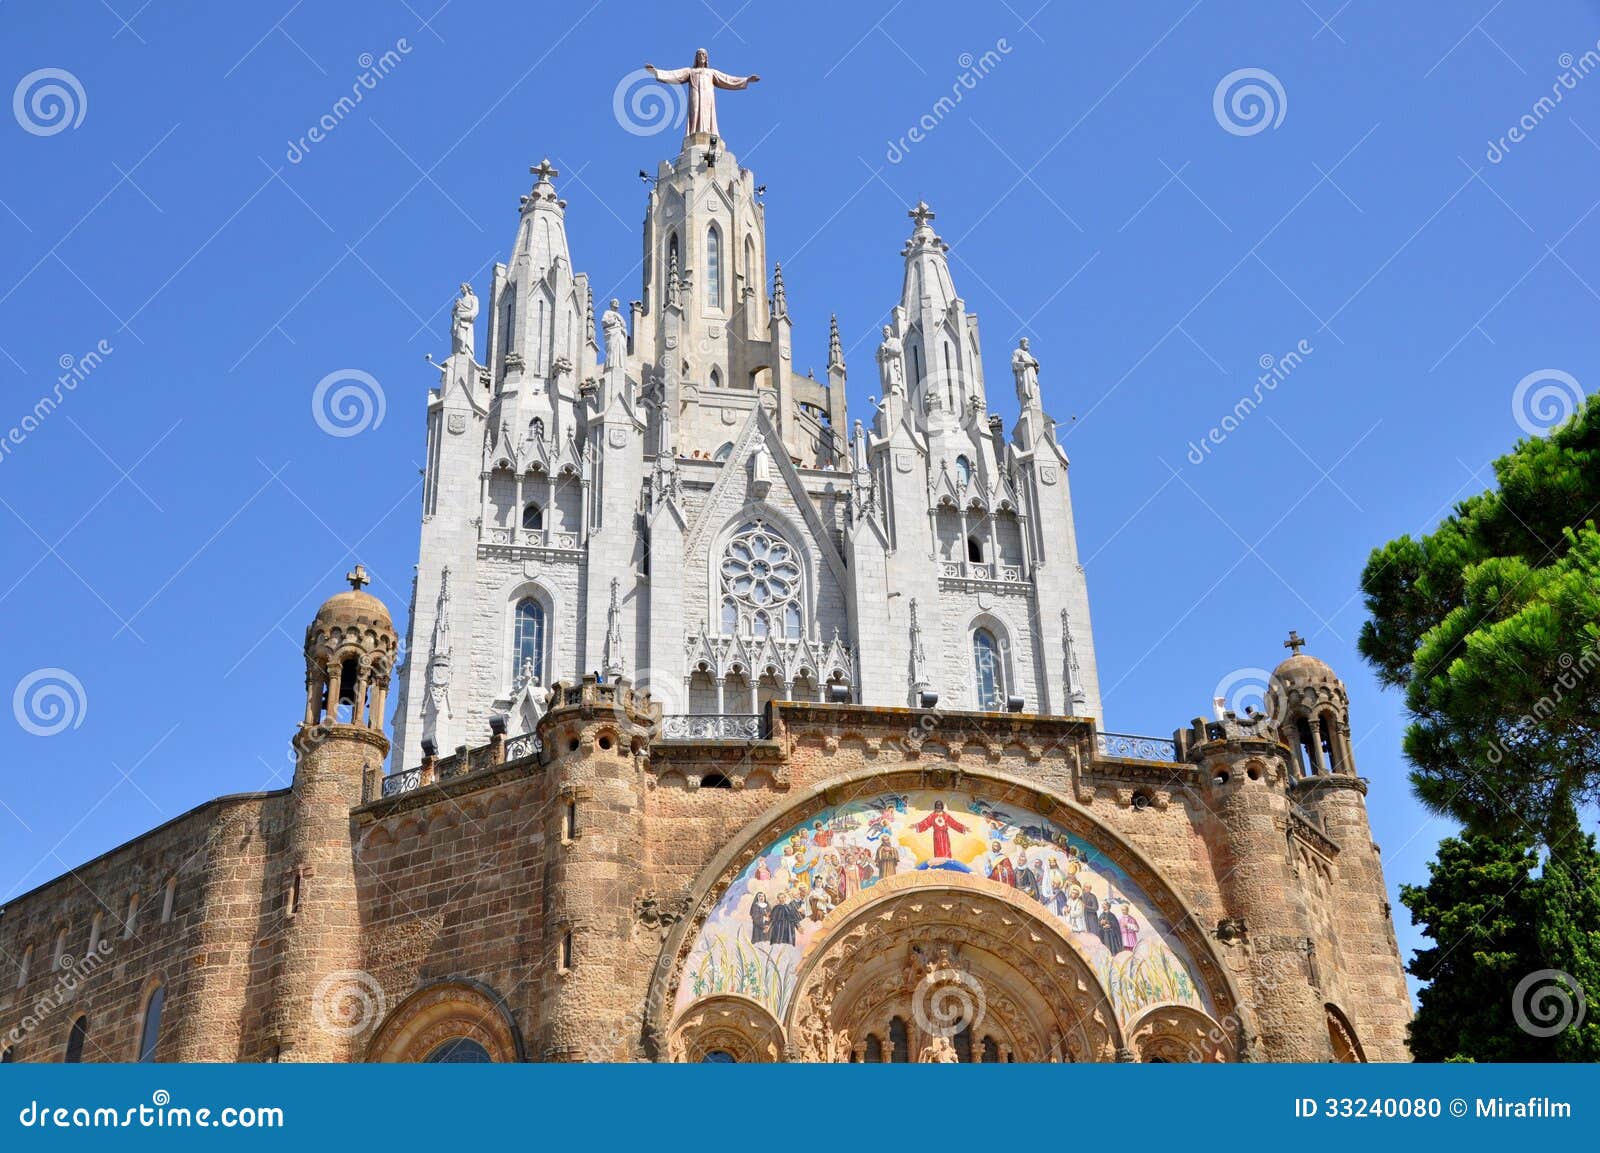 tibidabo church in barcelona, spain.